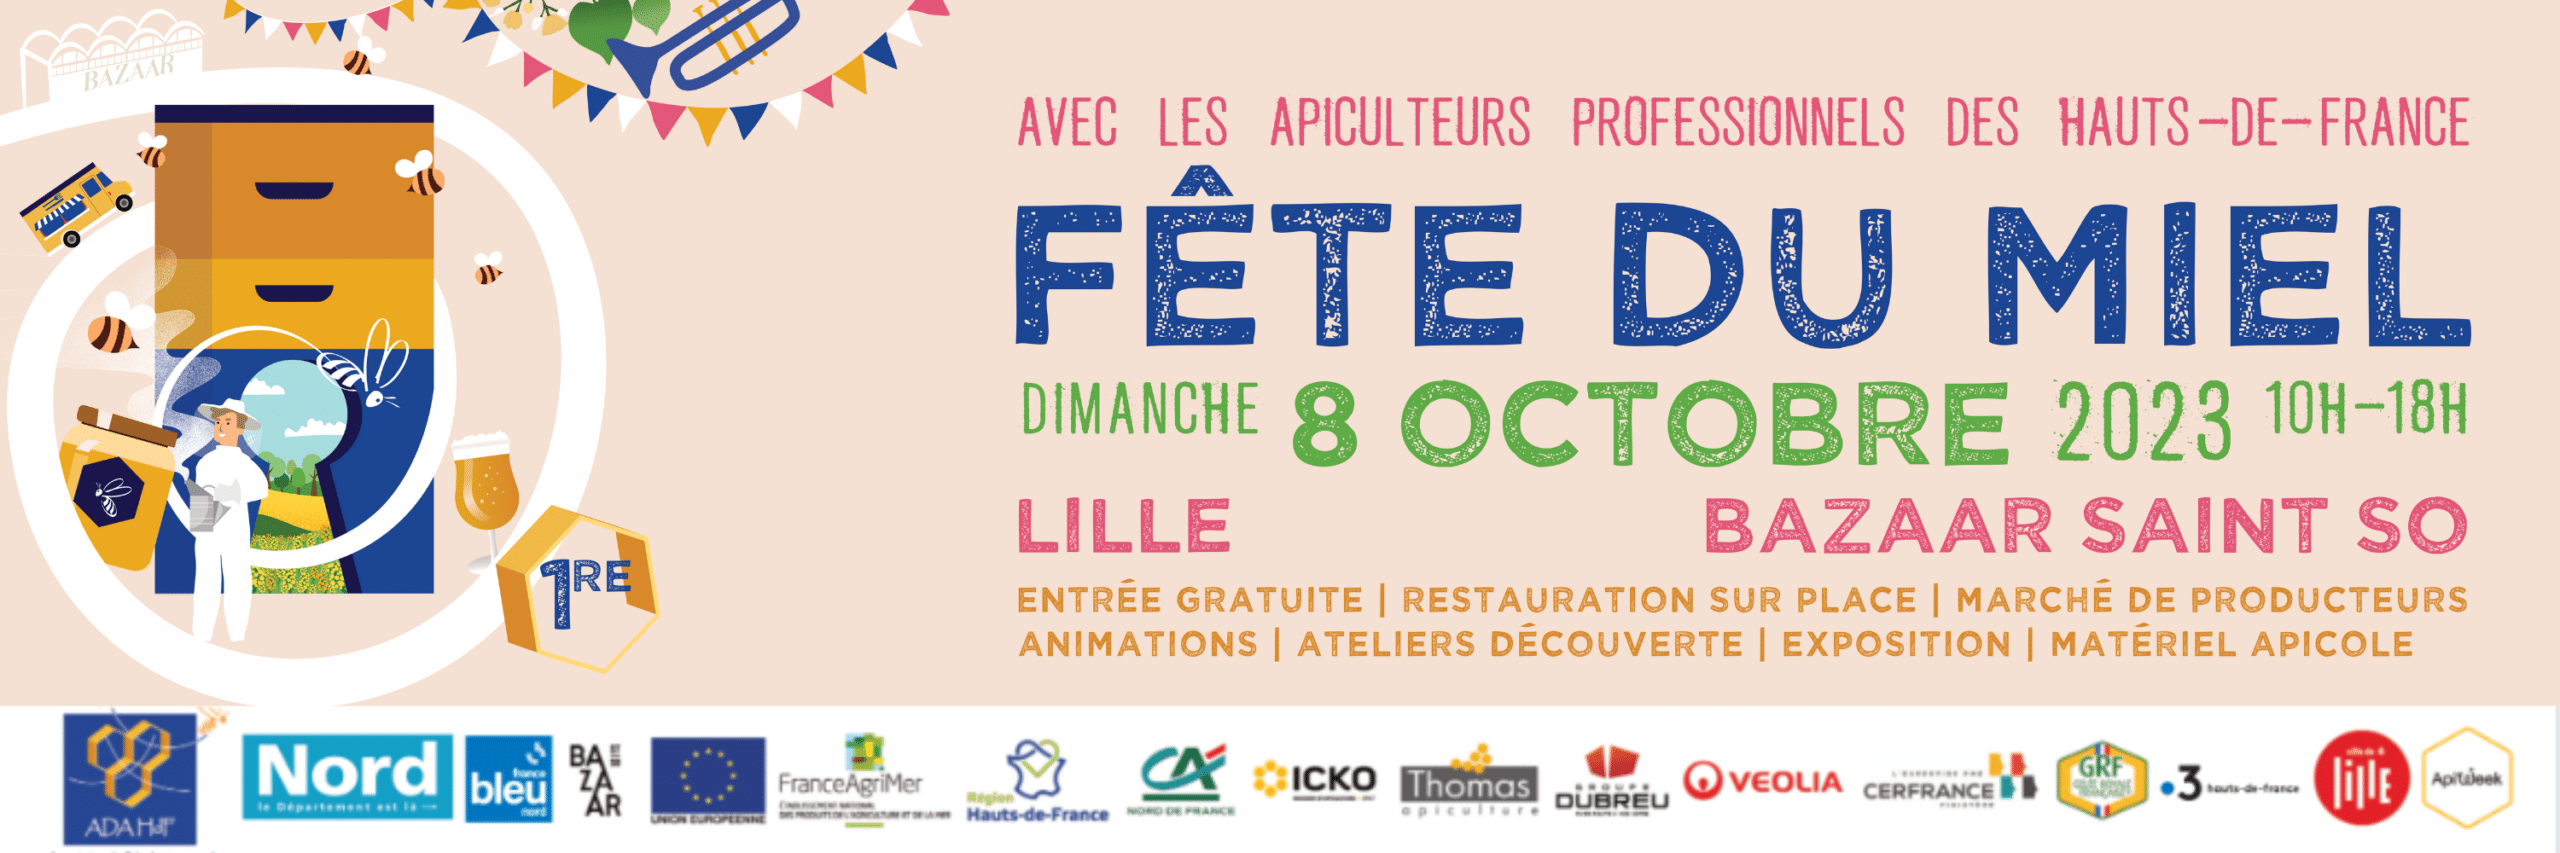 L'Association de Développement de l'Apiculture des Hauts-de-France